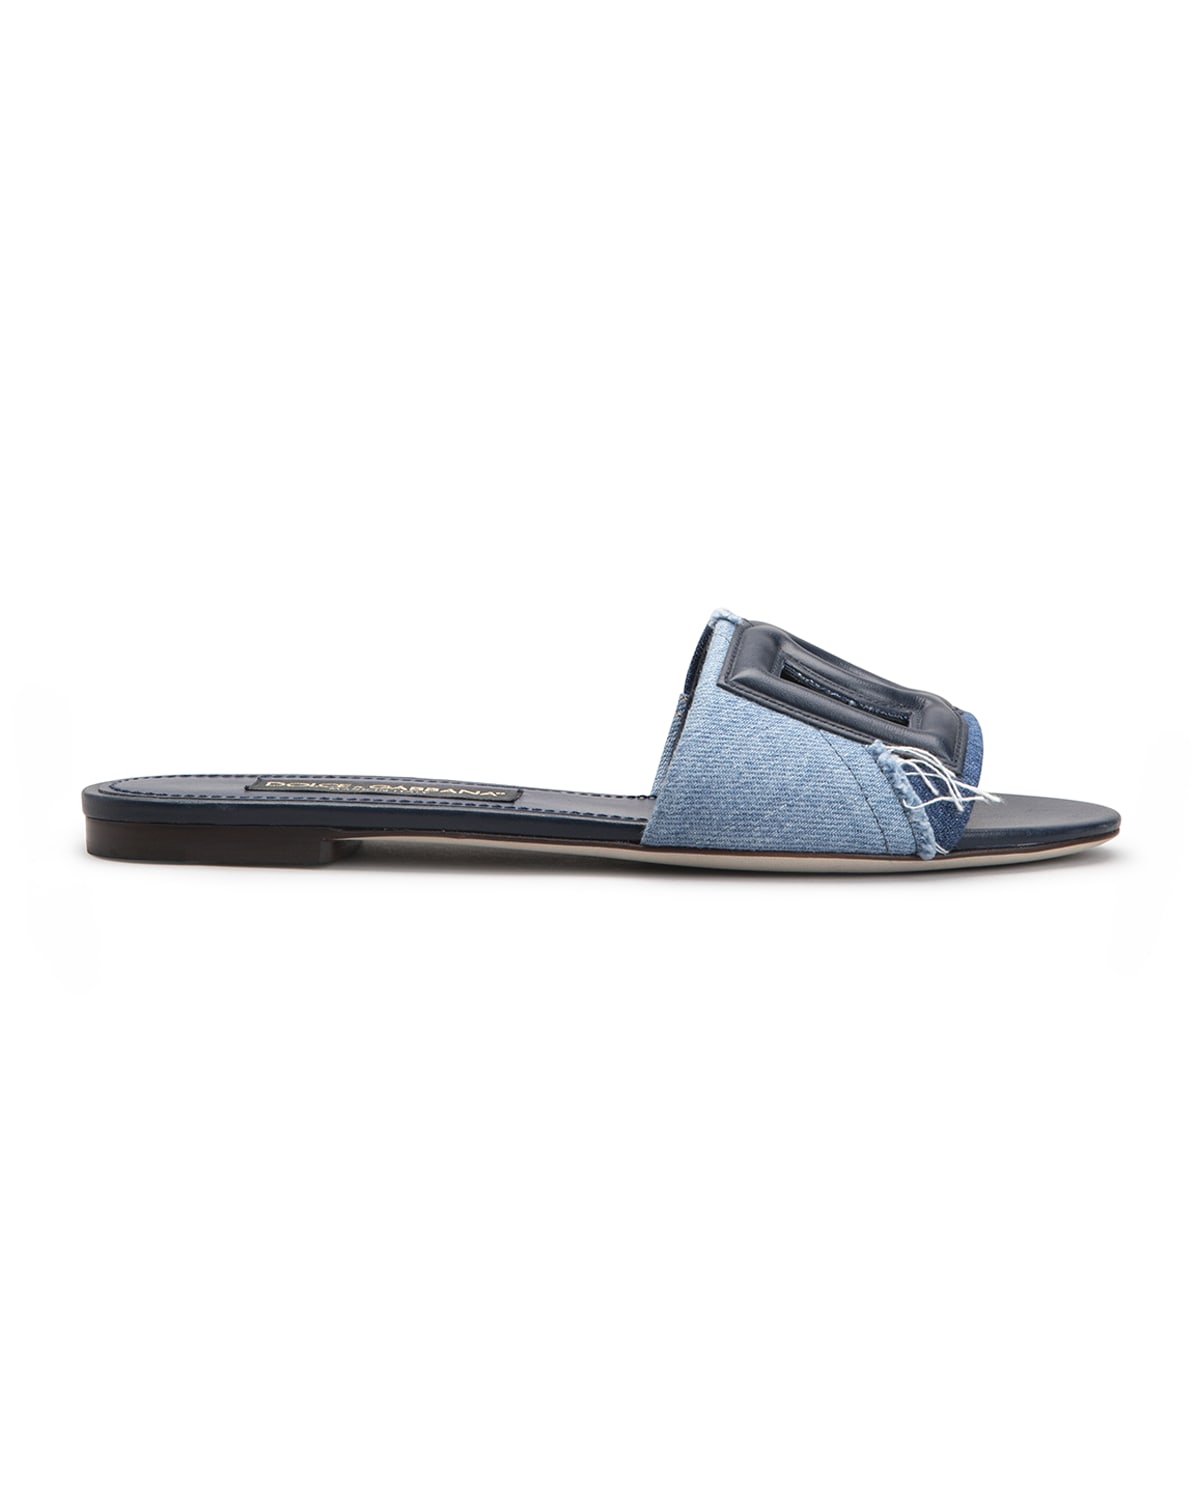 Dolce & Gabbana Dg Millennials Logo Blue Slides Sandals | ModeSens